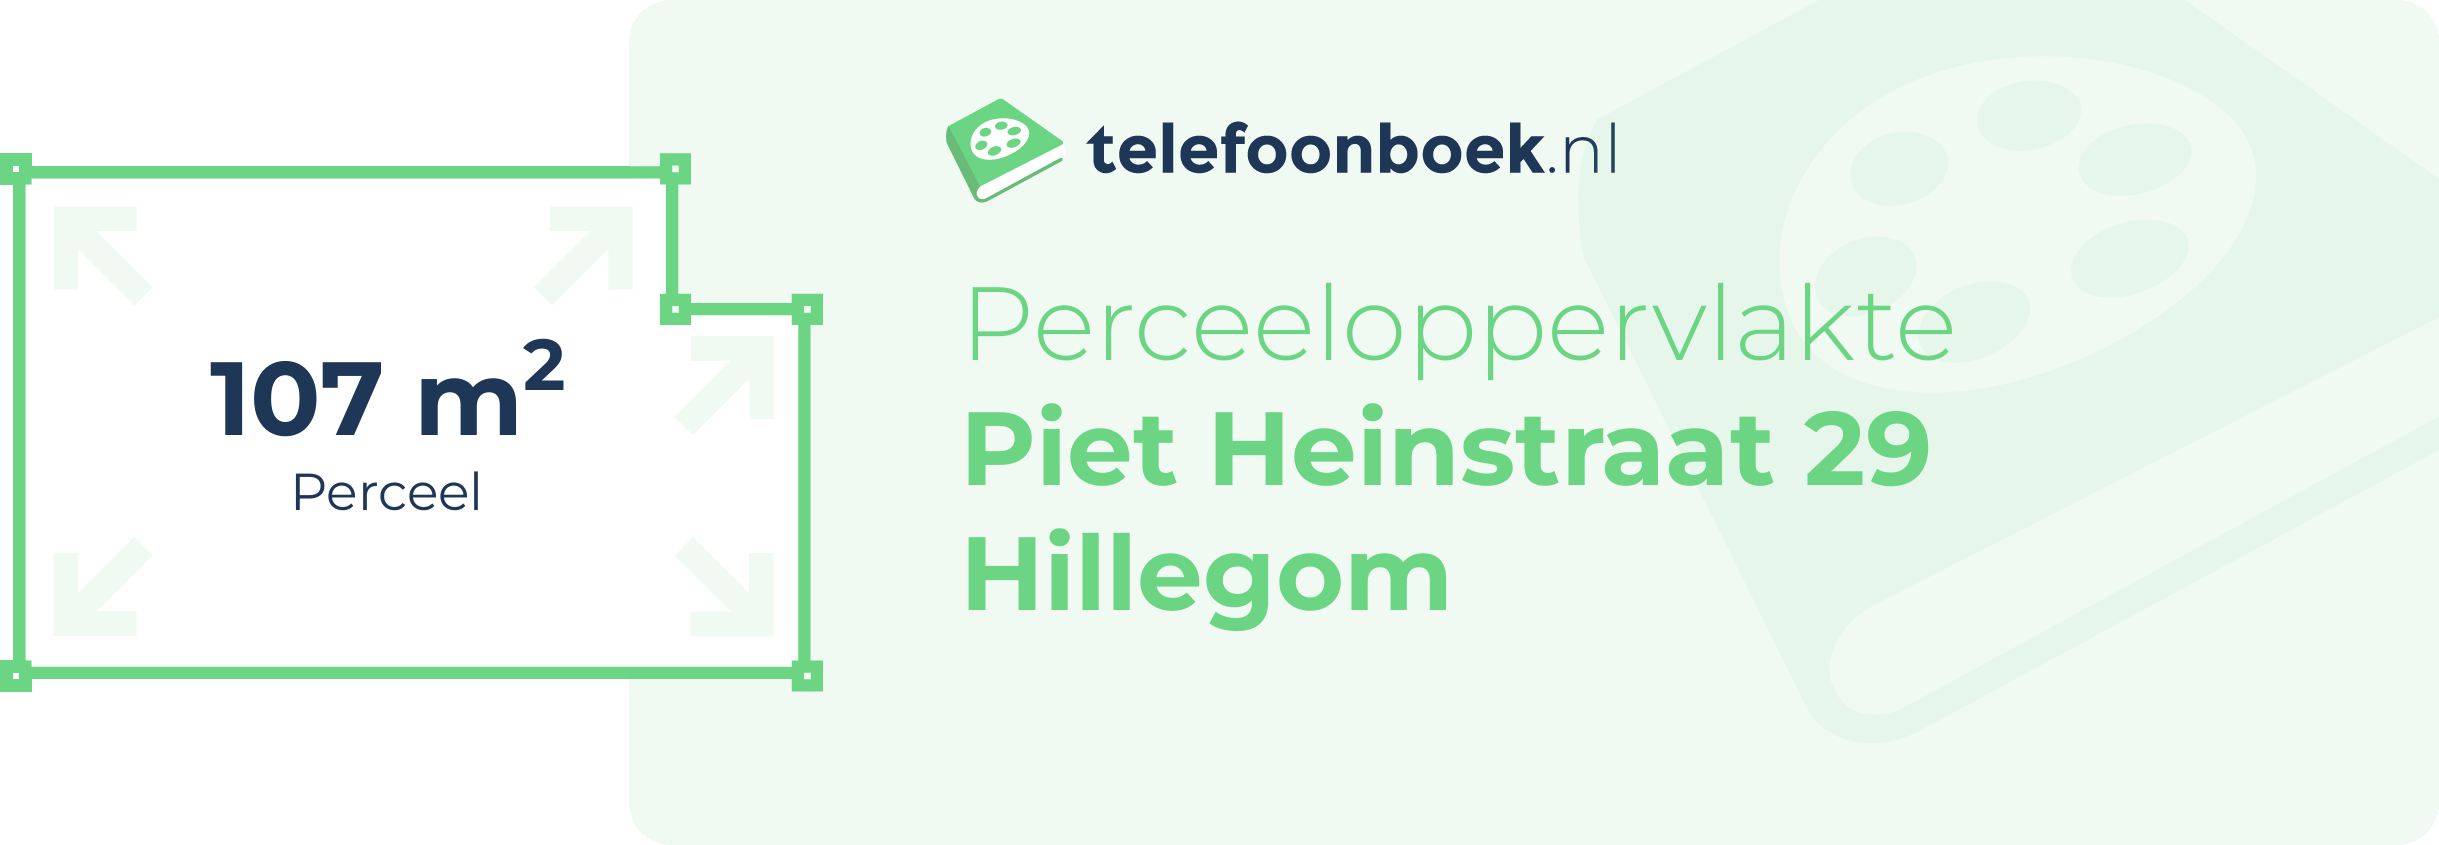 Perceeloppervlakte Piet Heinstraat 29 Hillegom